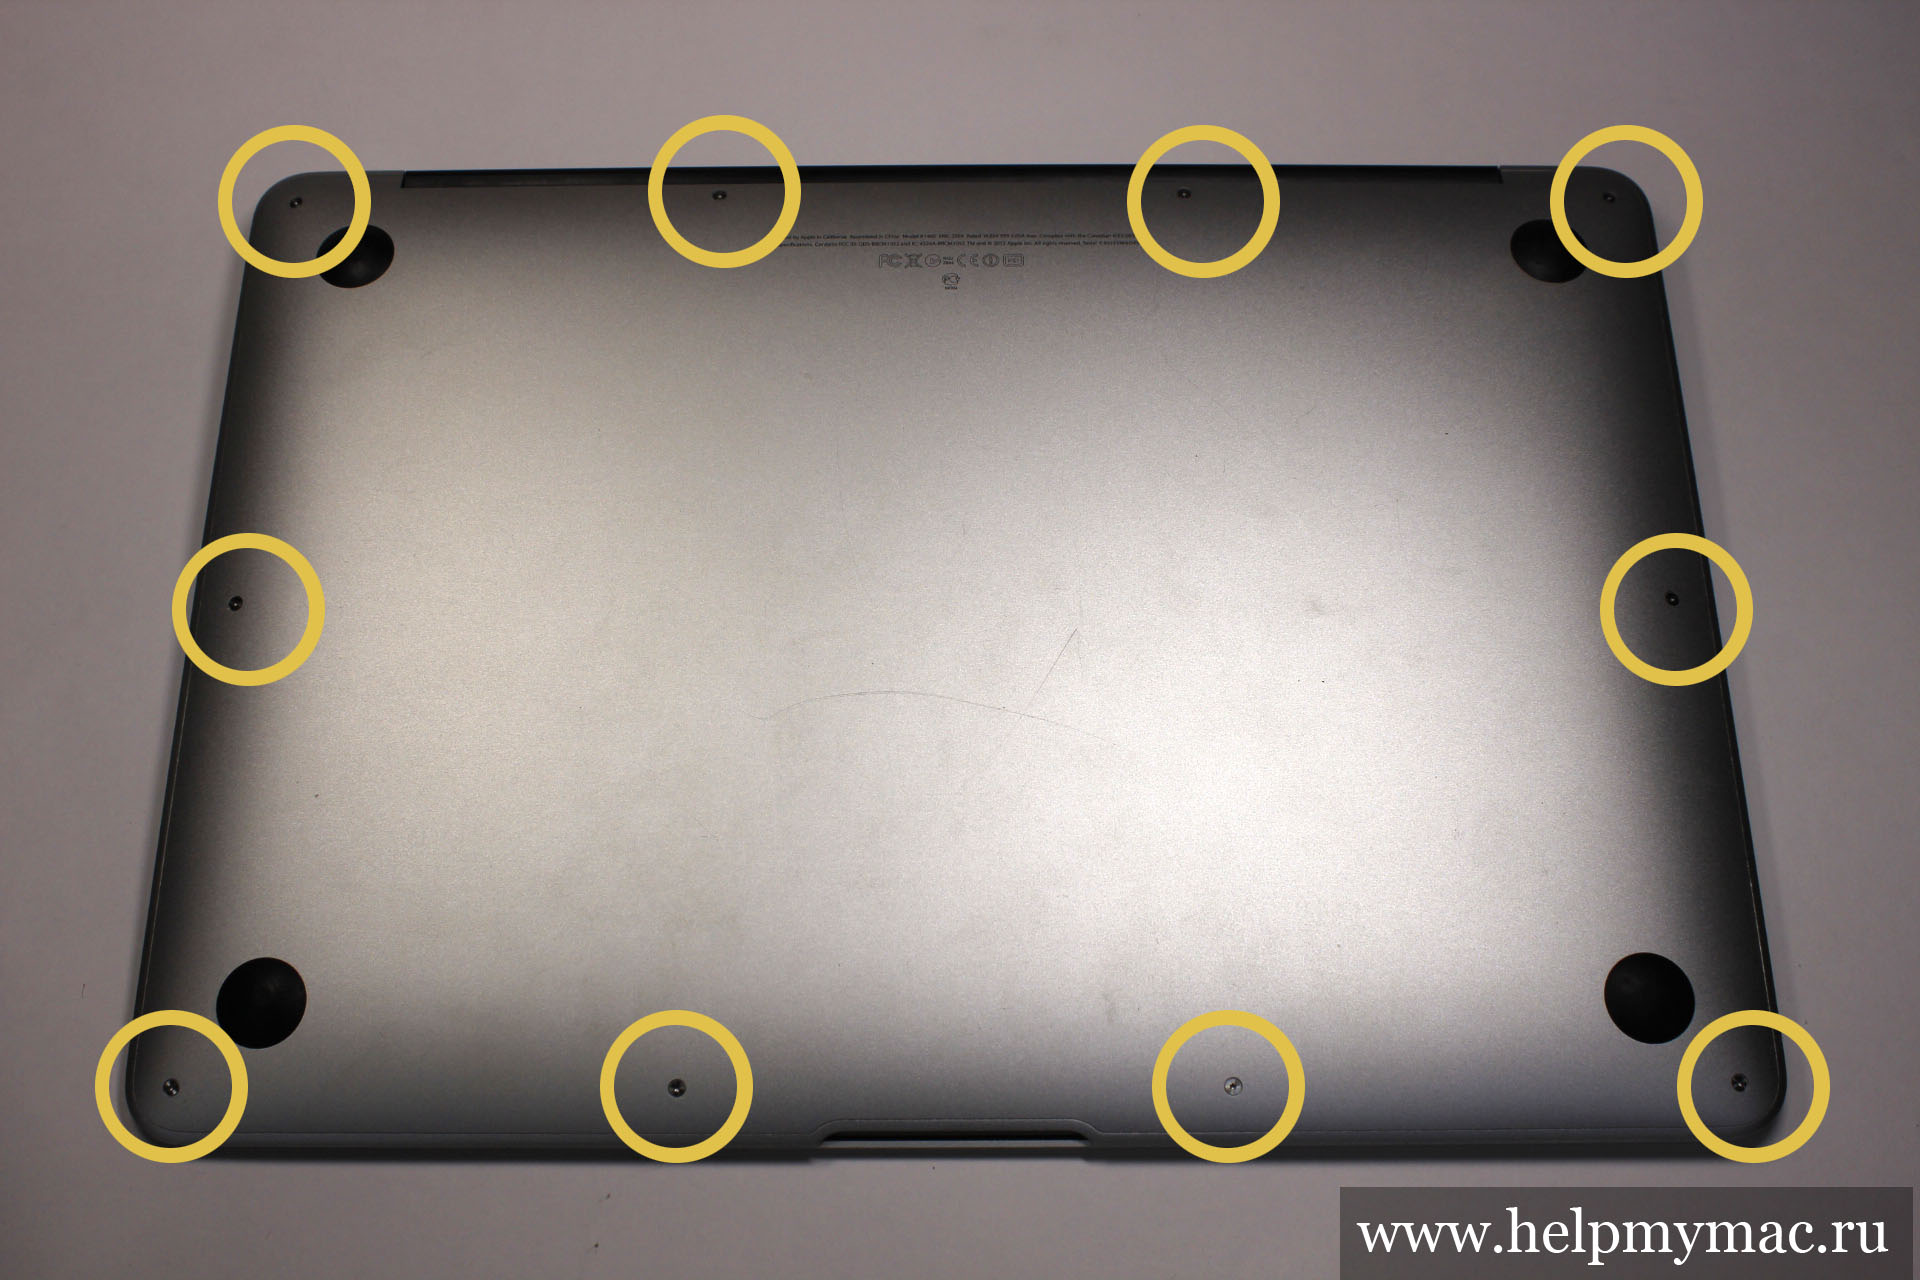 Нижняя крышка MacBook Air прикручена на 10 винтов Pentalobe